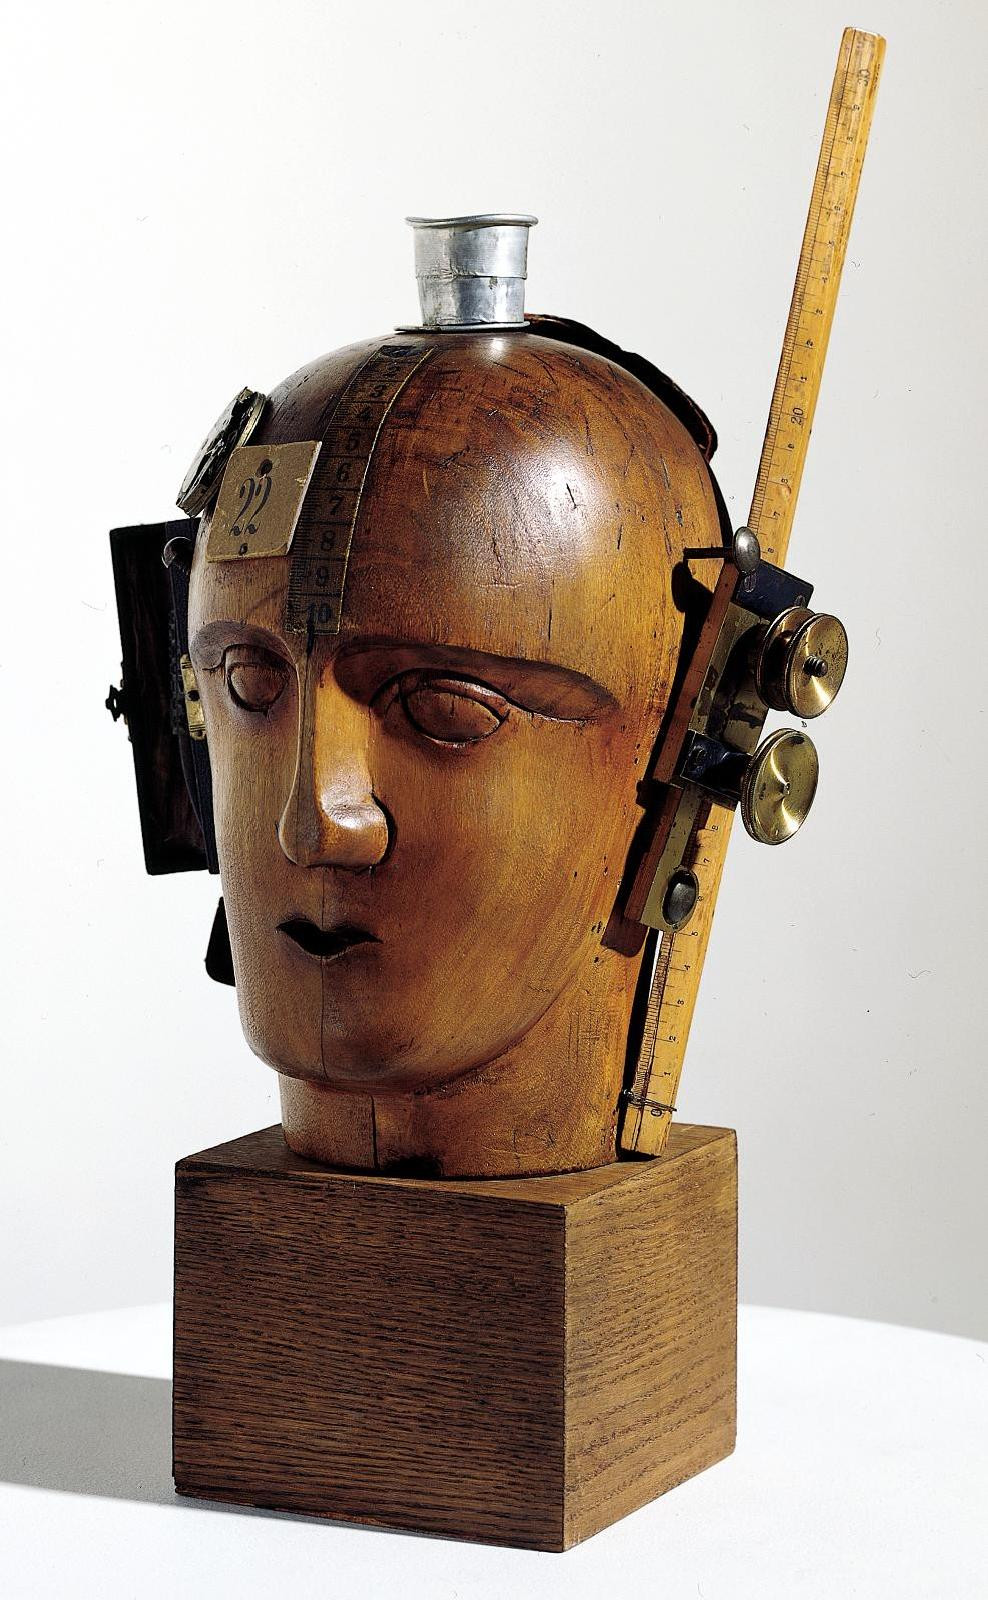 Raoul Hausmann, Mechanical Head (L’esprit de notre temps), assemblage, c. 1920